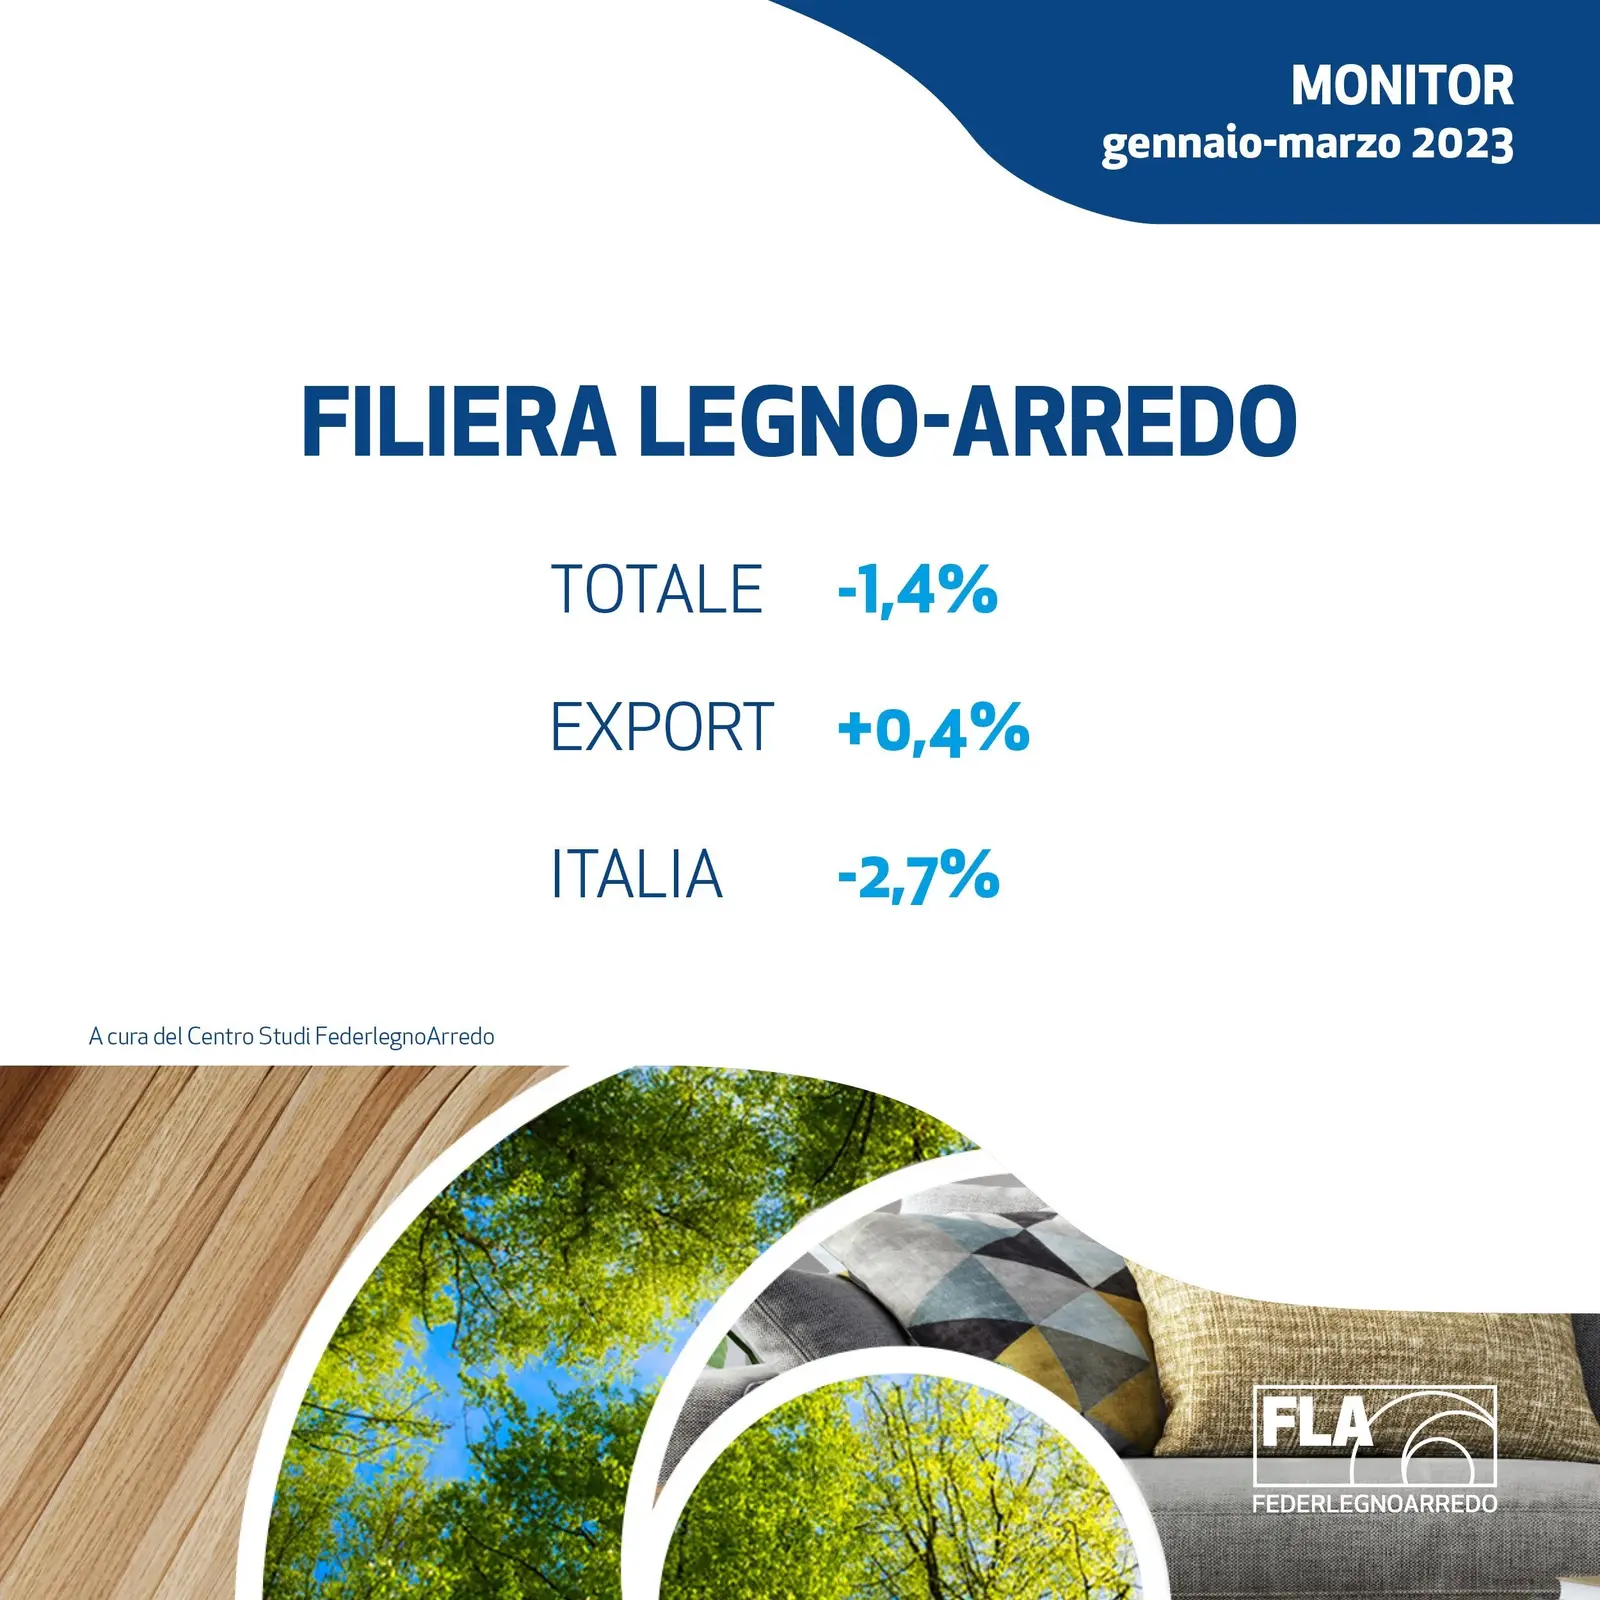 FederlegnoArredo prevé para 2023 un cierre del -3,3% para la cadena de suministro madera-mueble